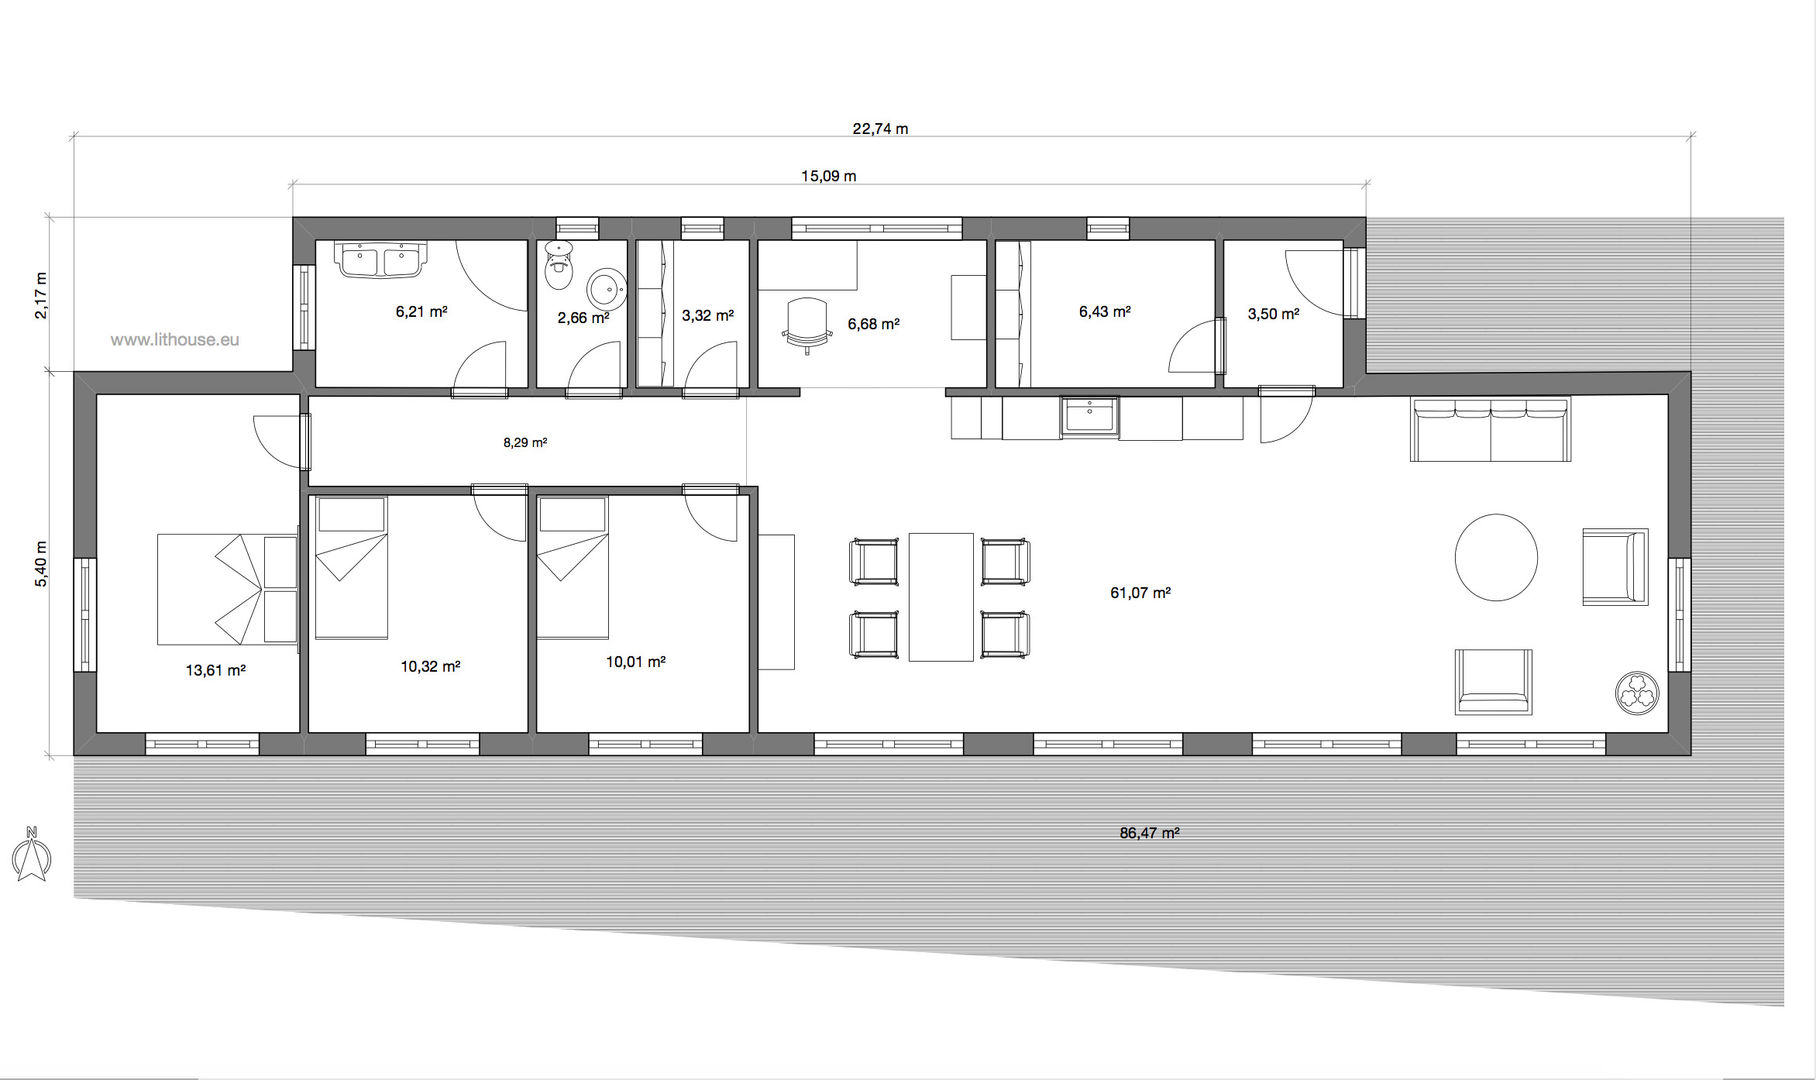 ทันสมัย โดย Namas , โมเดิร์น floor plan,design,container house